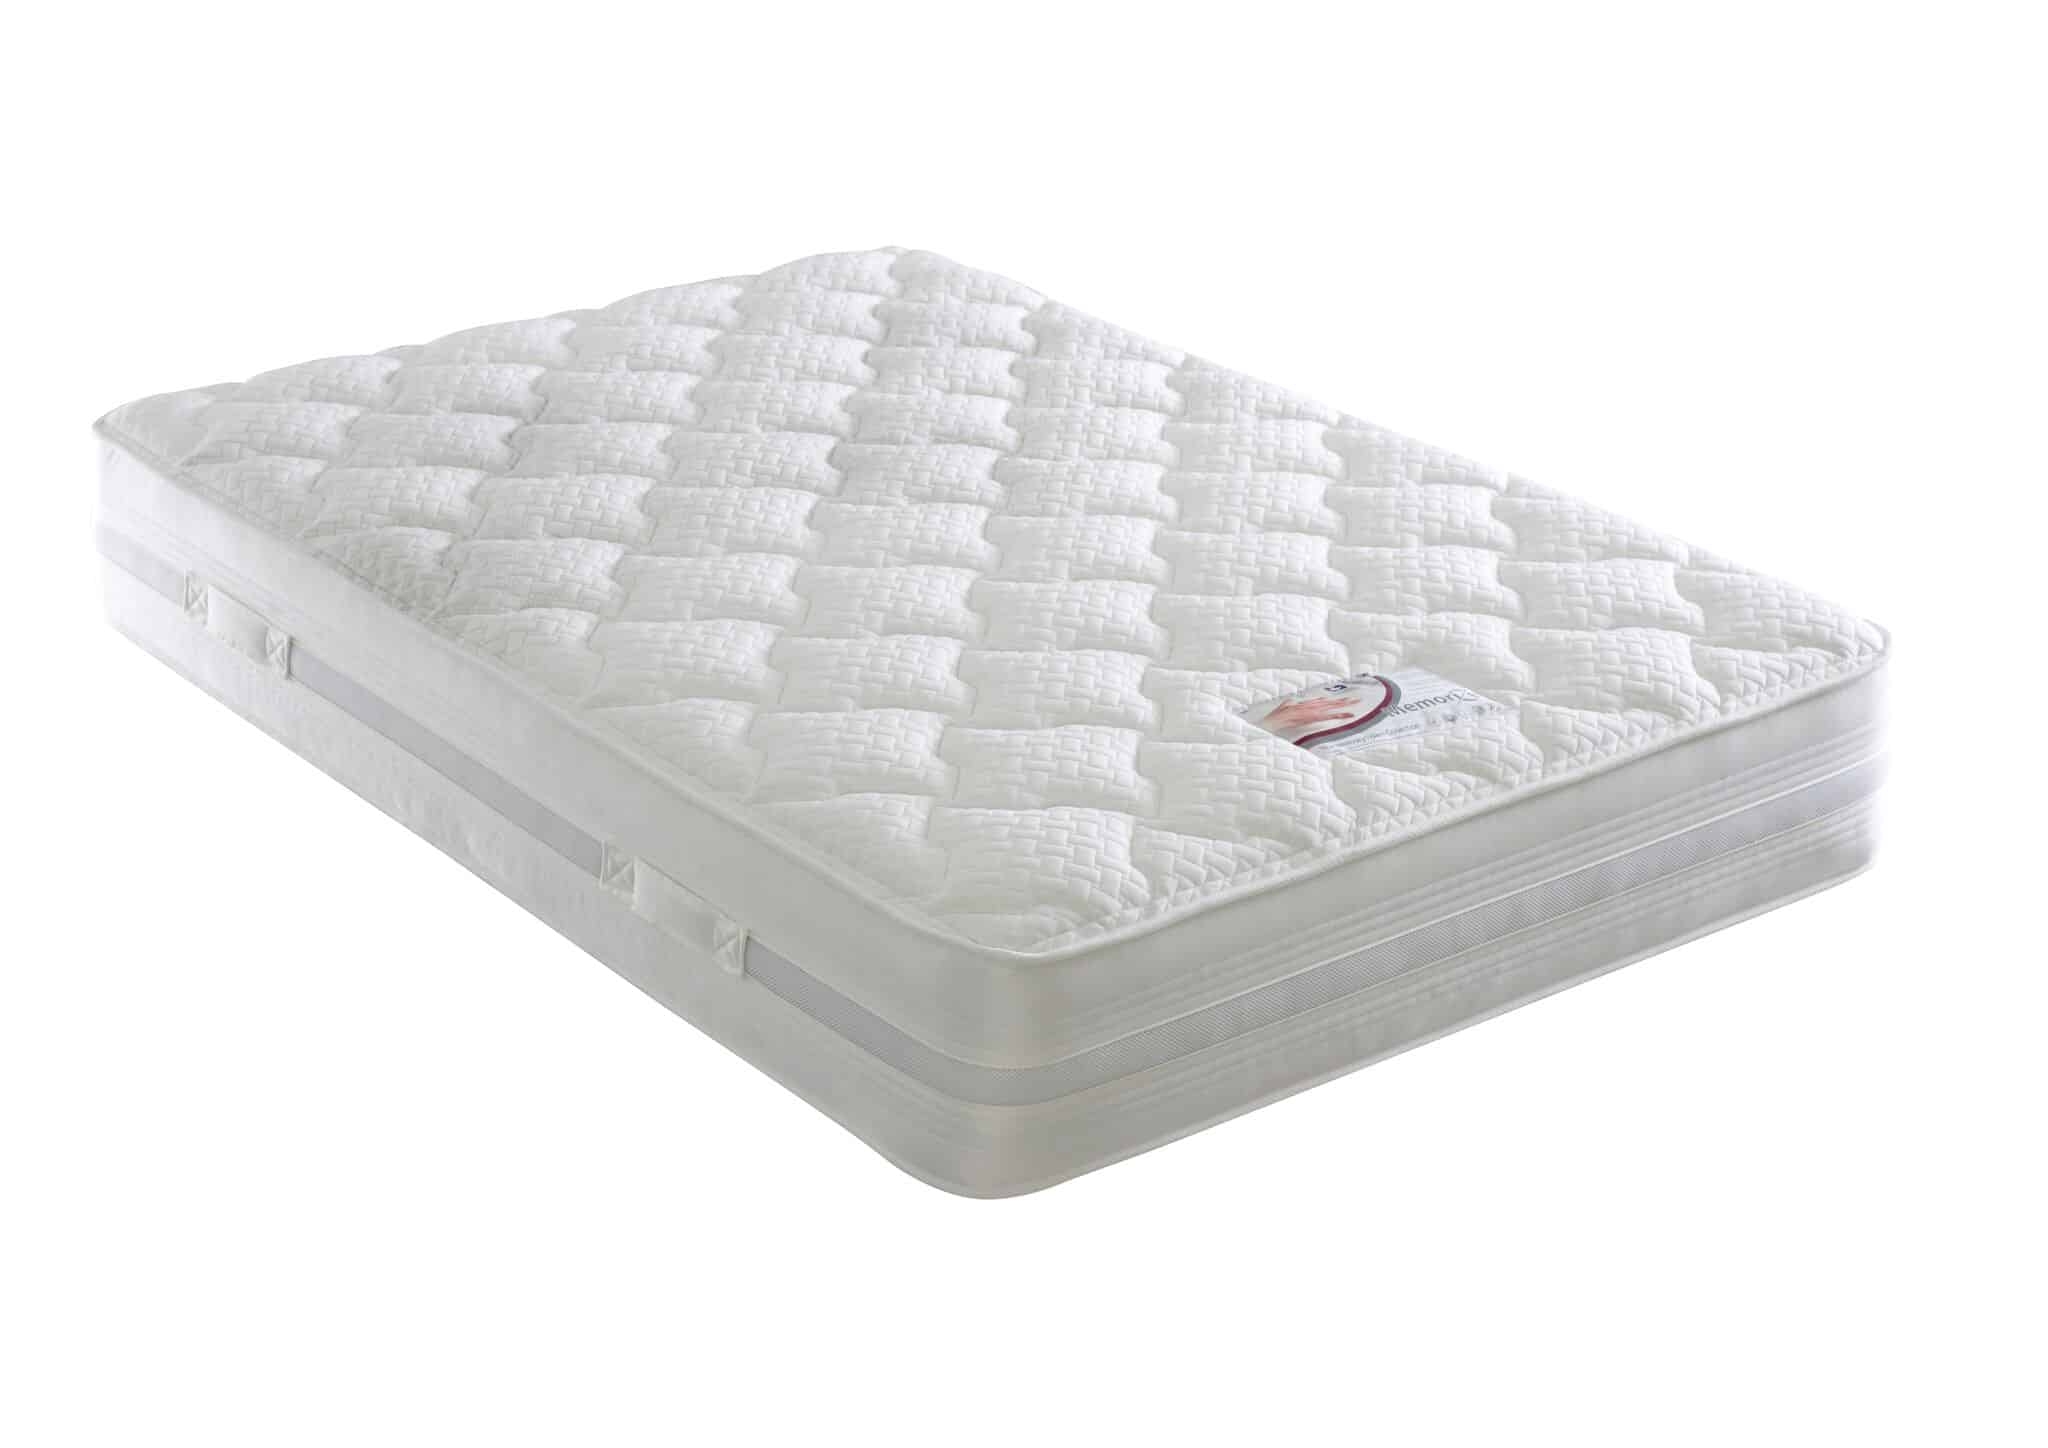 Dura Beds Memory Foam Mattress – Memorize Mattress – Small Double – Airflow Cushion Medium Firmness Mattress